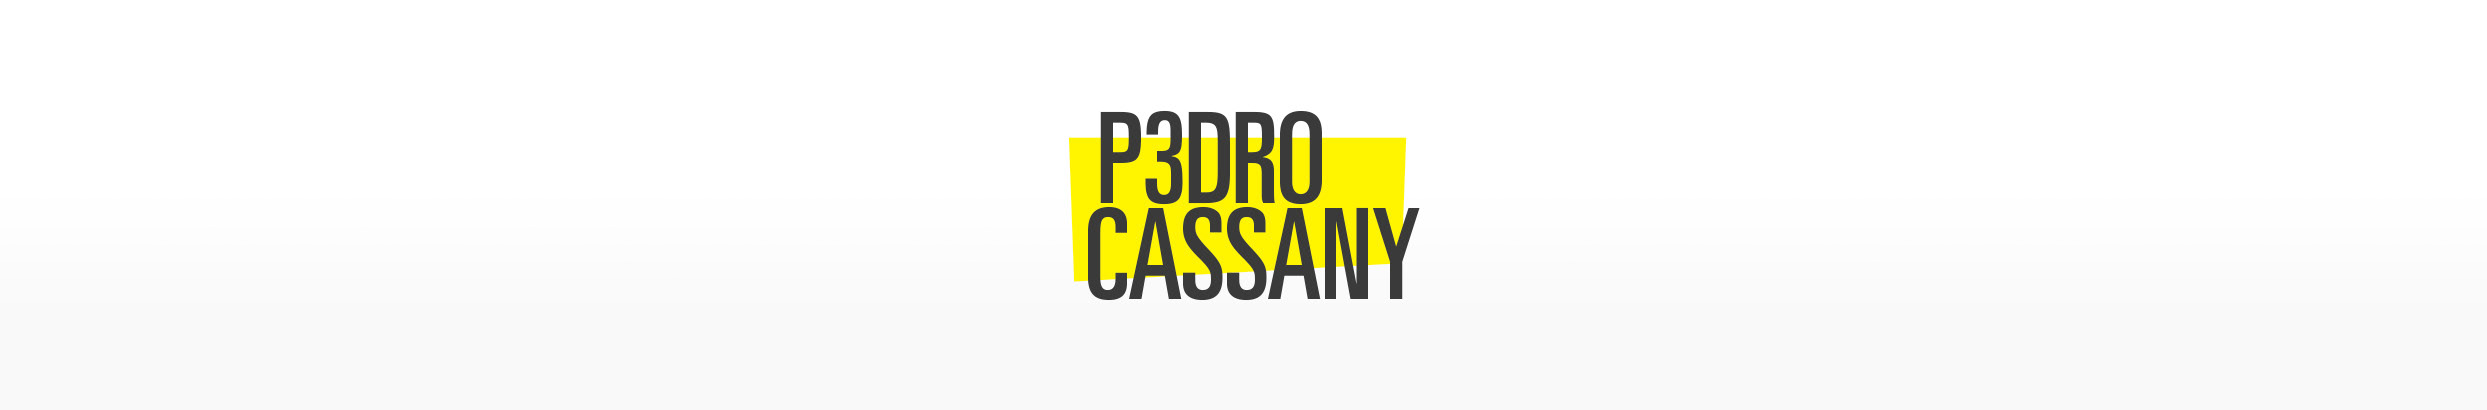 Pedro Cassany's profile banner